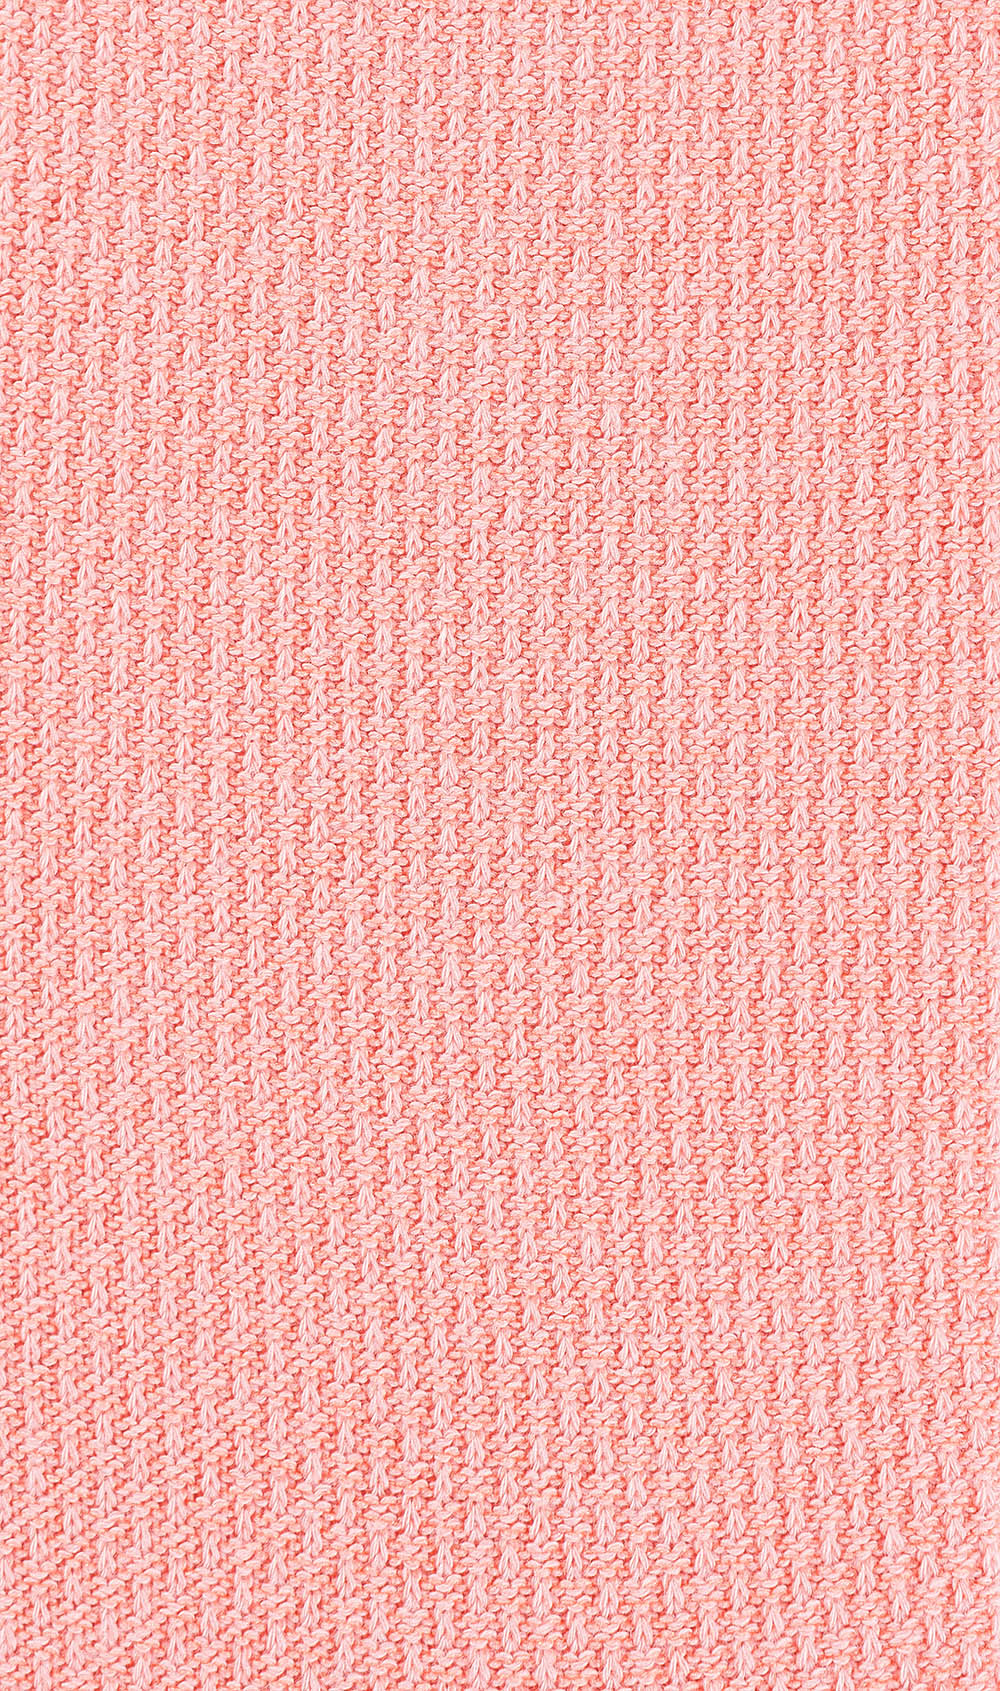 Peach Textured Socks Pattern